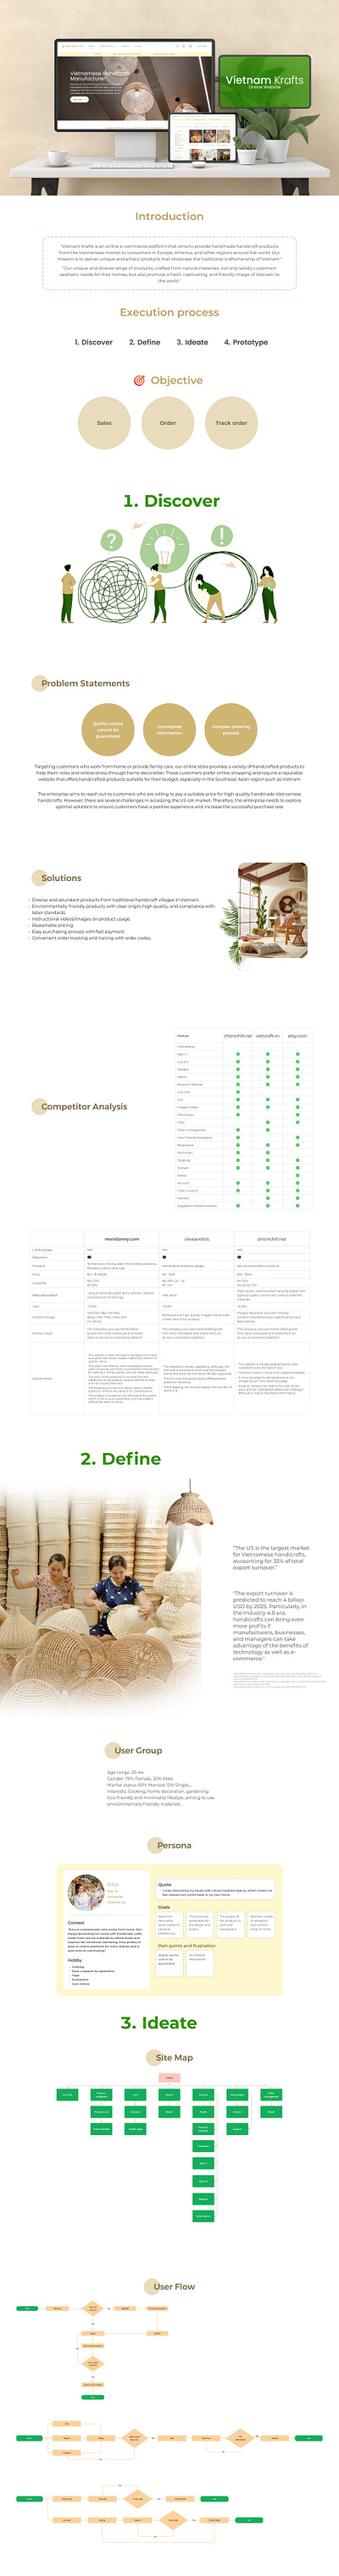 UX/UI Case Study design graphic design ui ux web